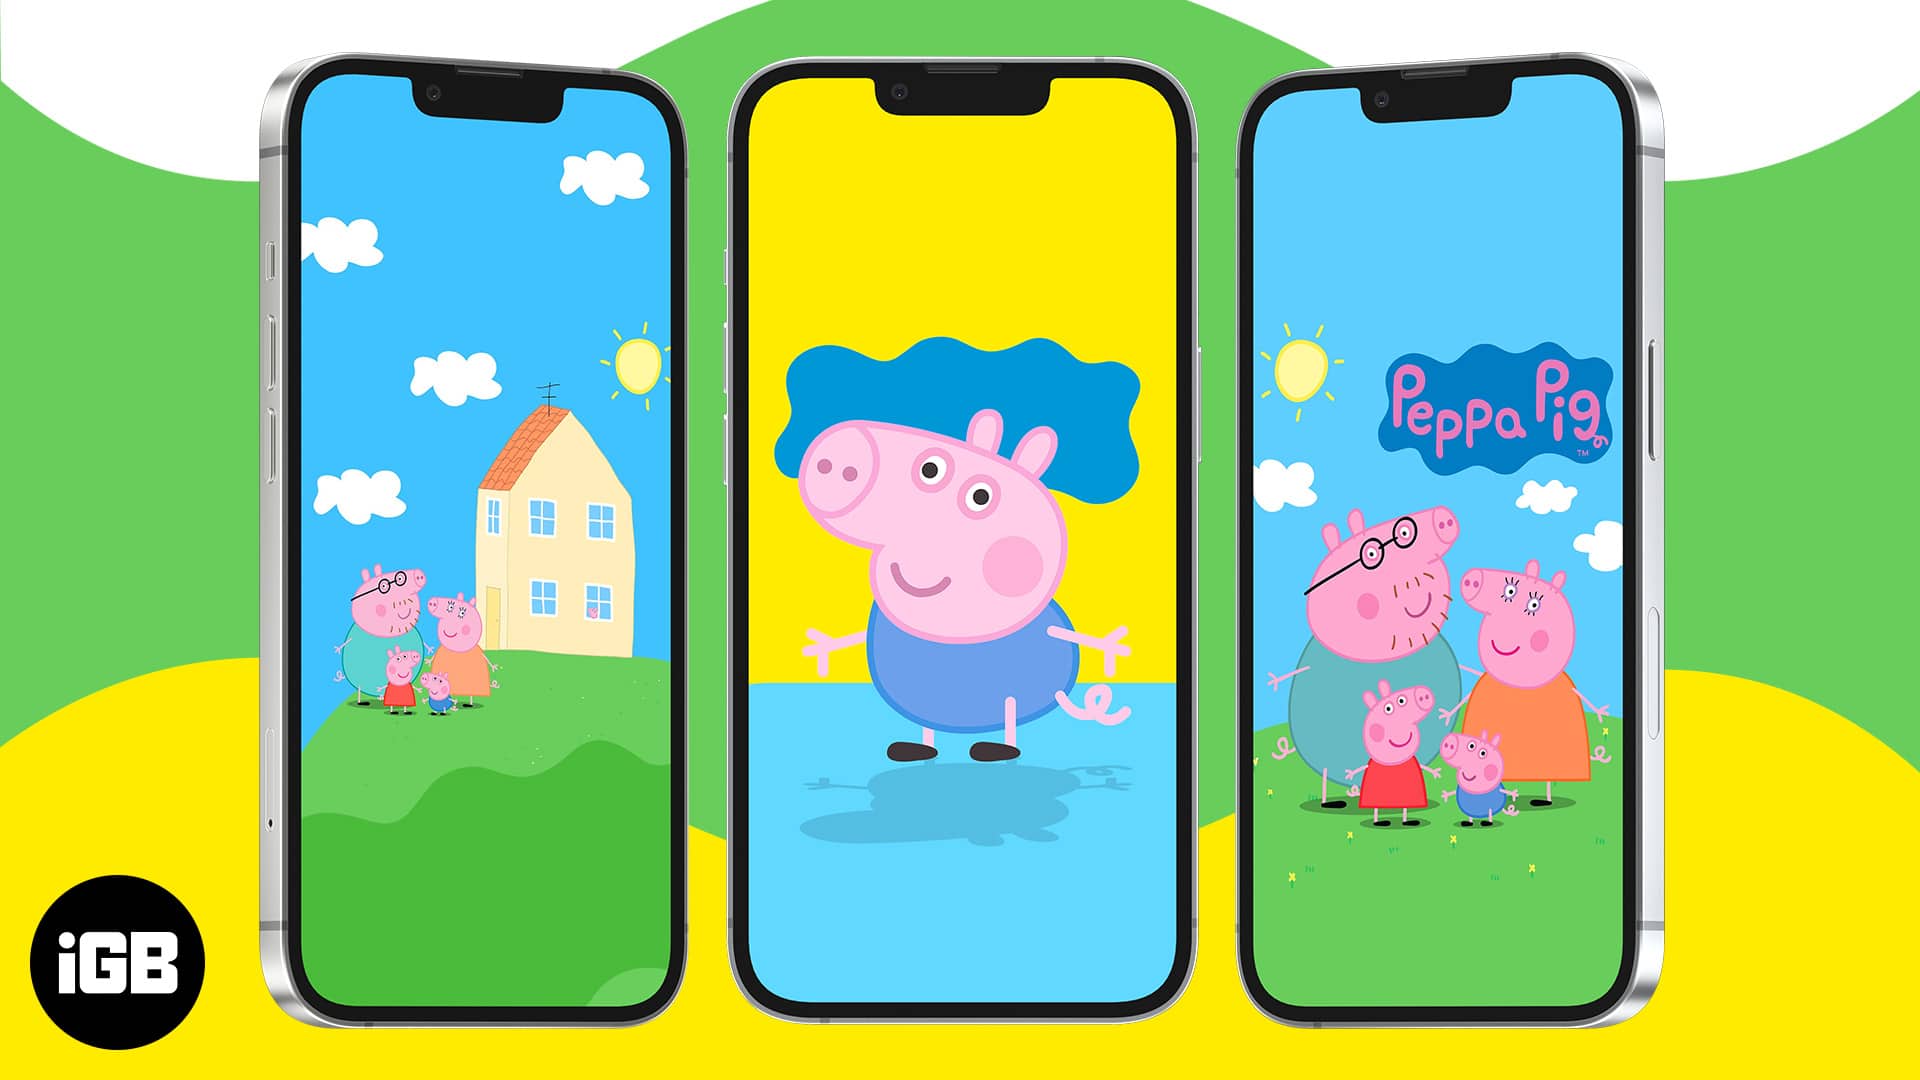 17 Peppa Pig Wallpaper Ideas  Peppa Pig  Friends  Idea Wallpapers   iPhone WallpapersColor Schemes